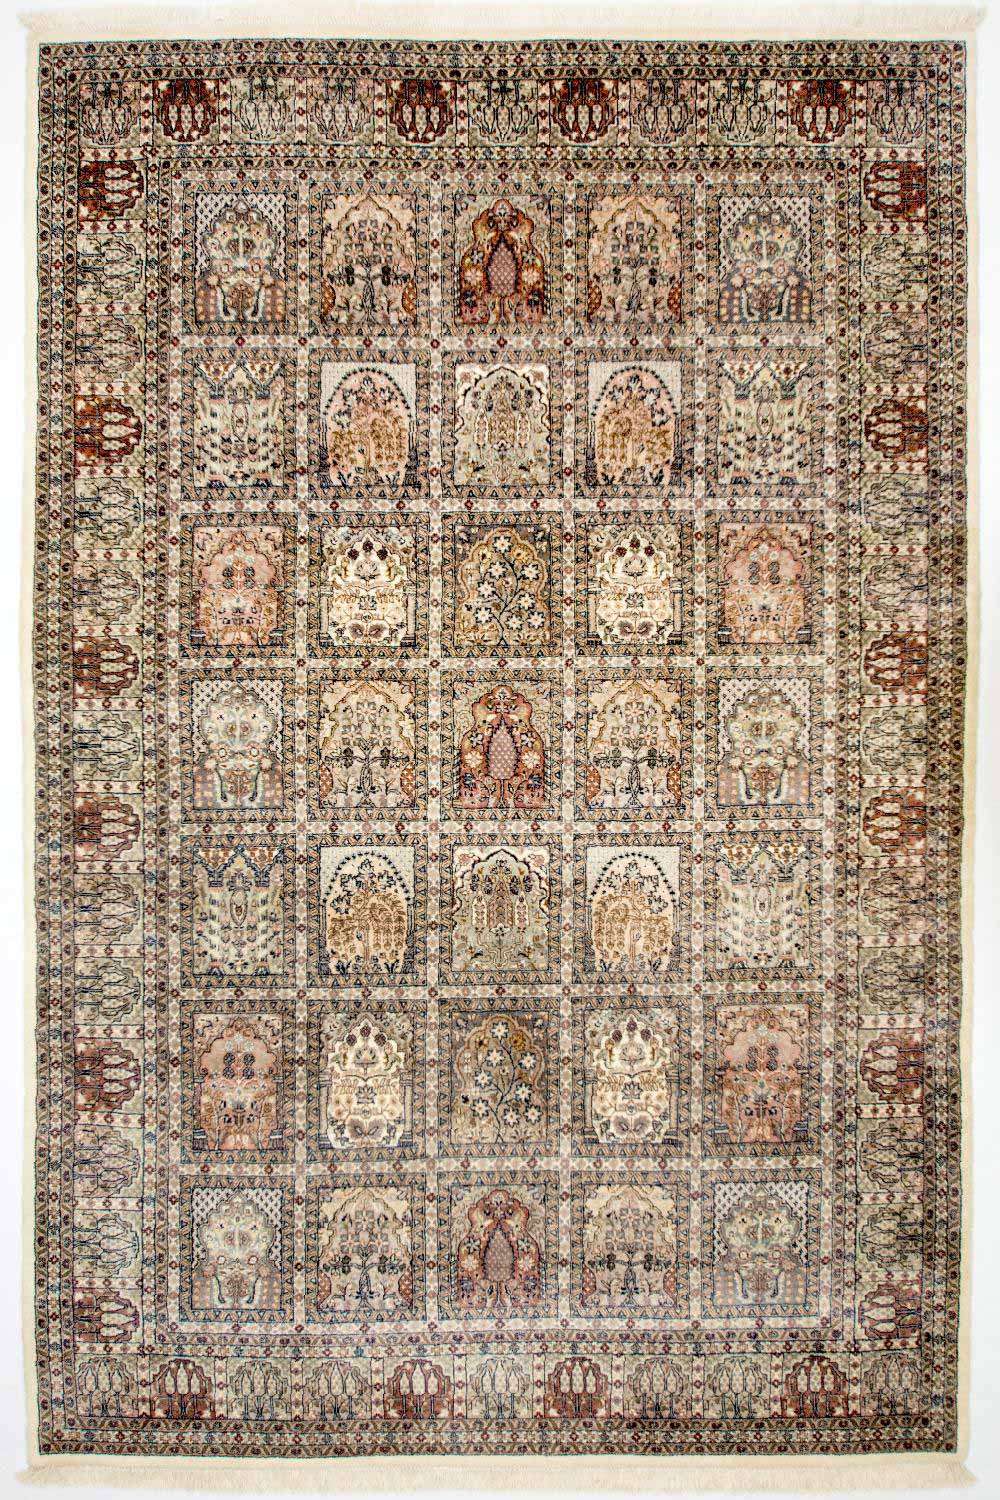 Tapis persan - Nomadic - 304 x 209 cm - multicolore